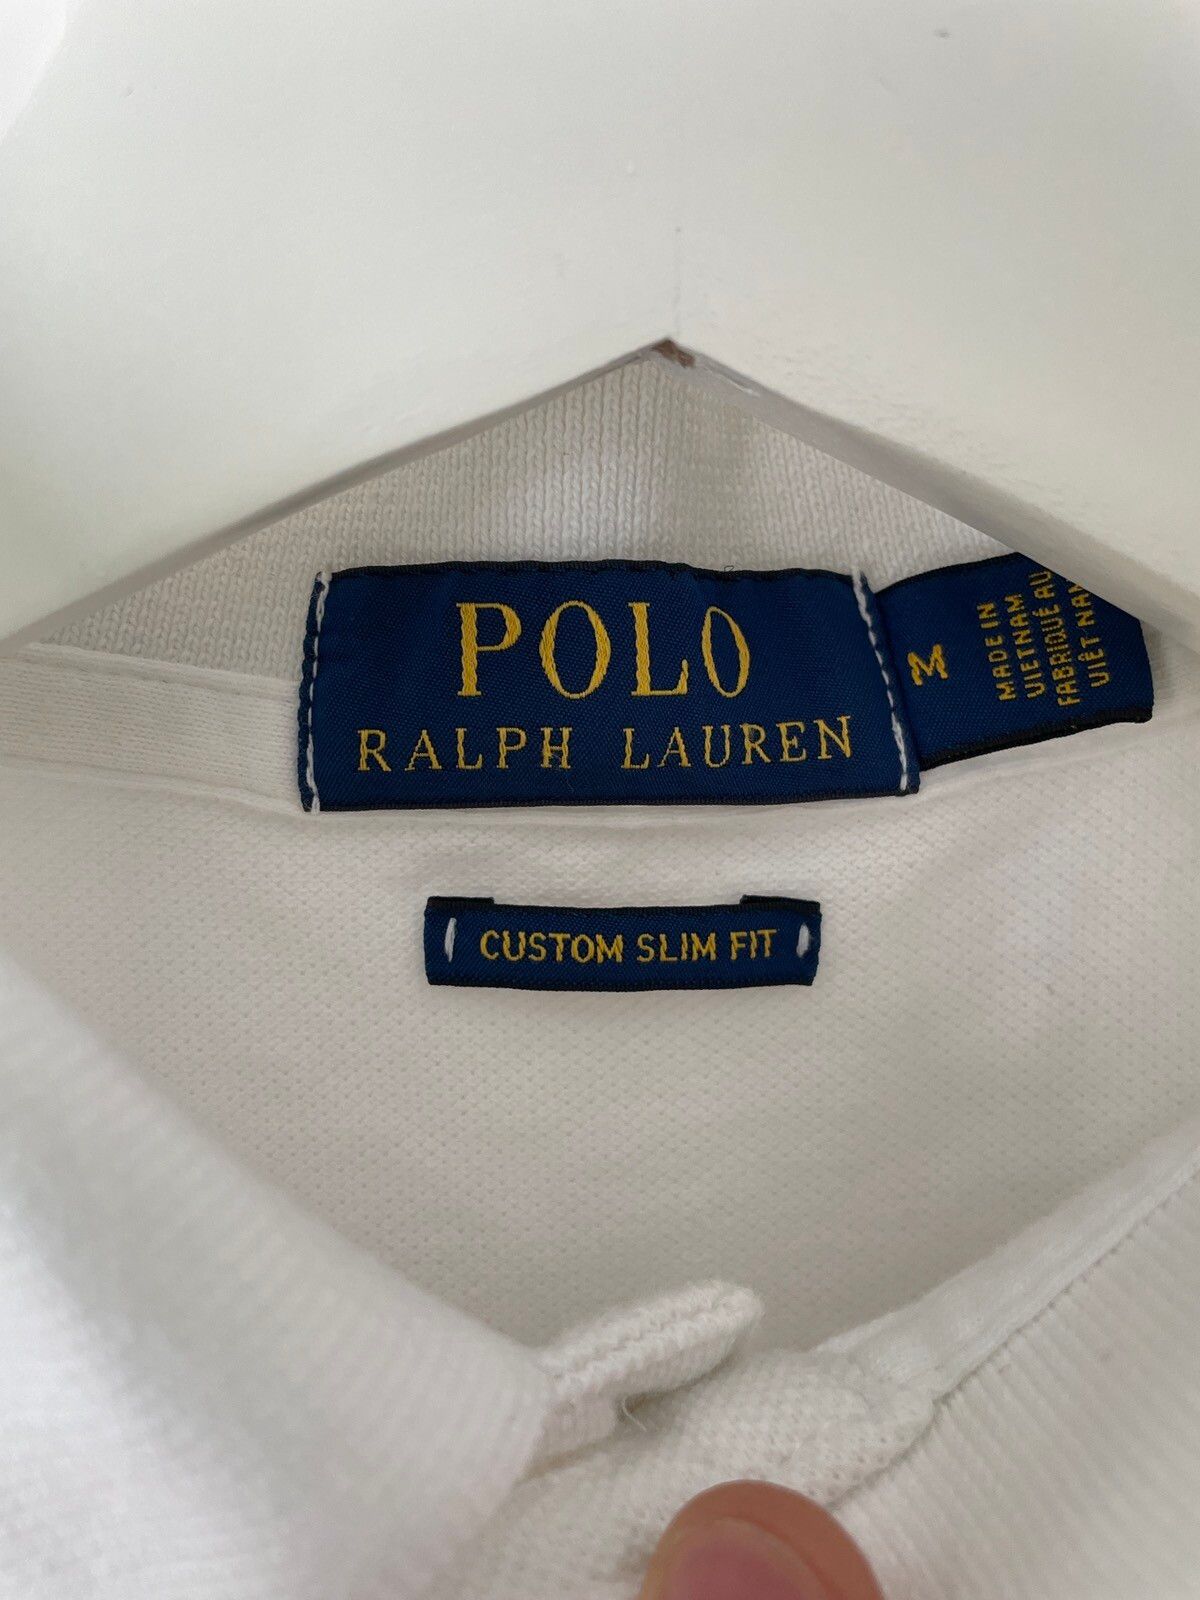 Polo Ralph Lauren CHIEF KEEF X Ralph Lauren polo shirt Size US M / EU 48-50 / 2 - 4 Thumbnail